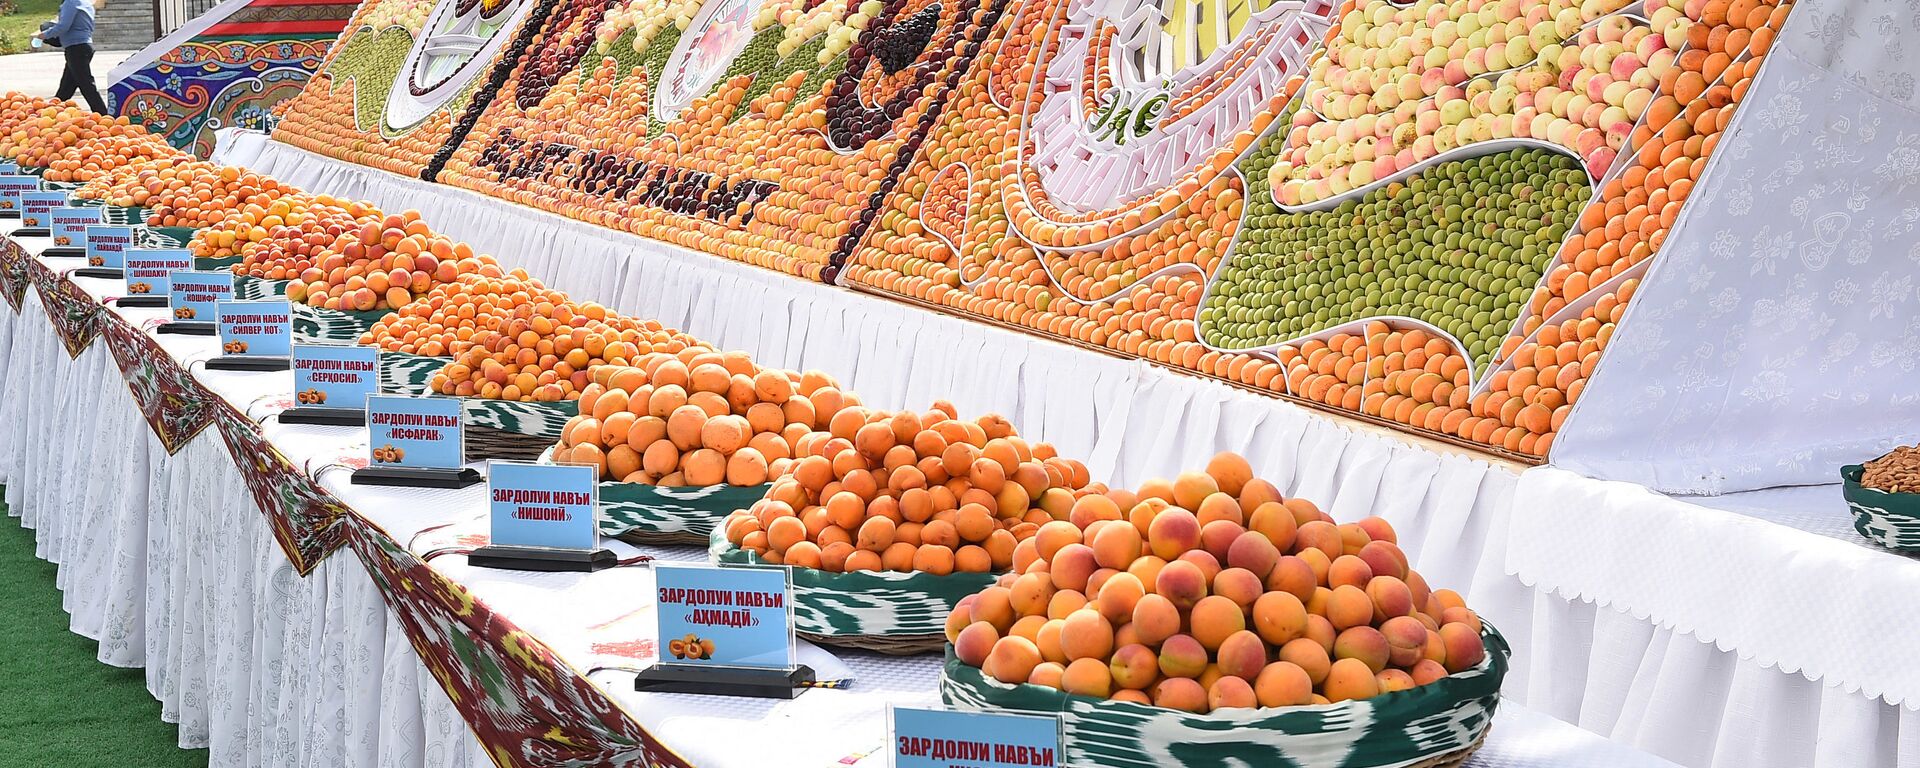 Урожай фруктов на выставке в Худжанде - Sputnik Таджикистан, 1920, 12.10.2021